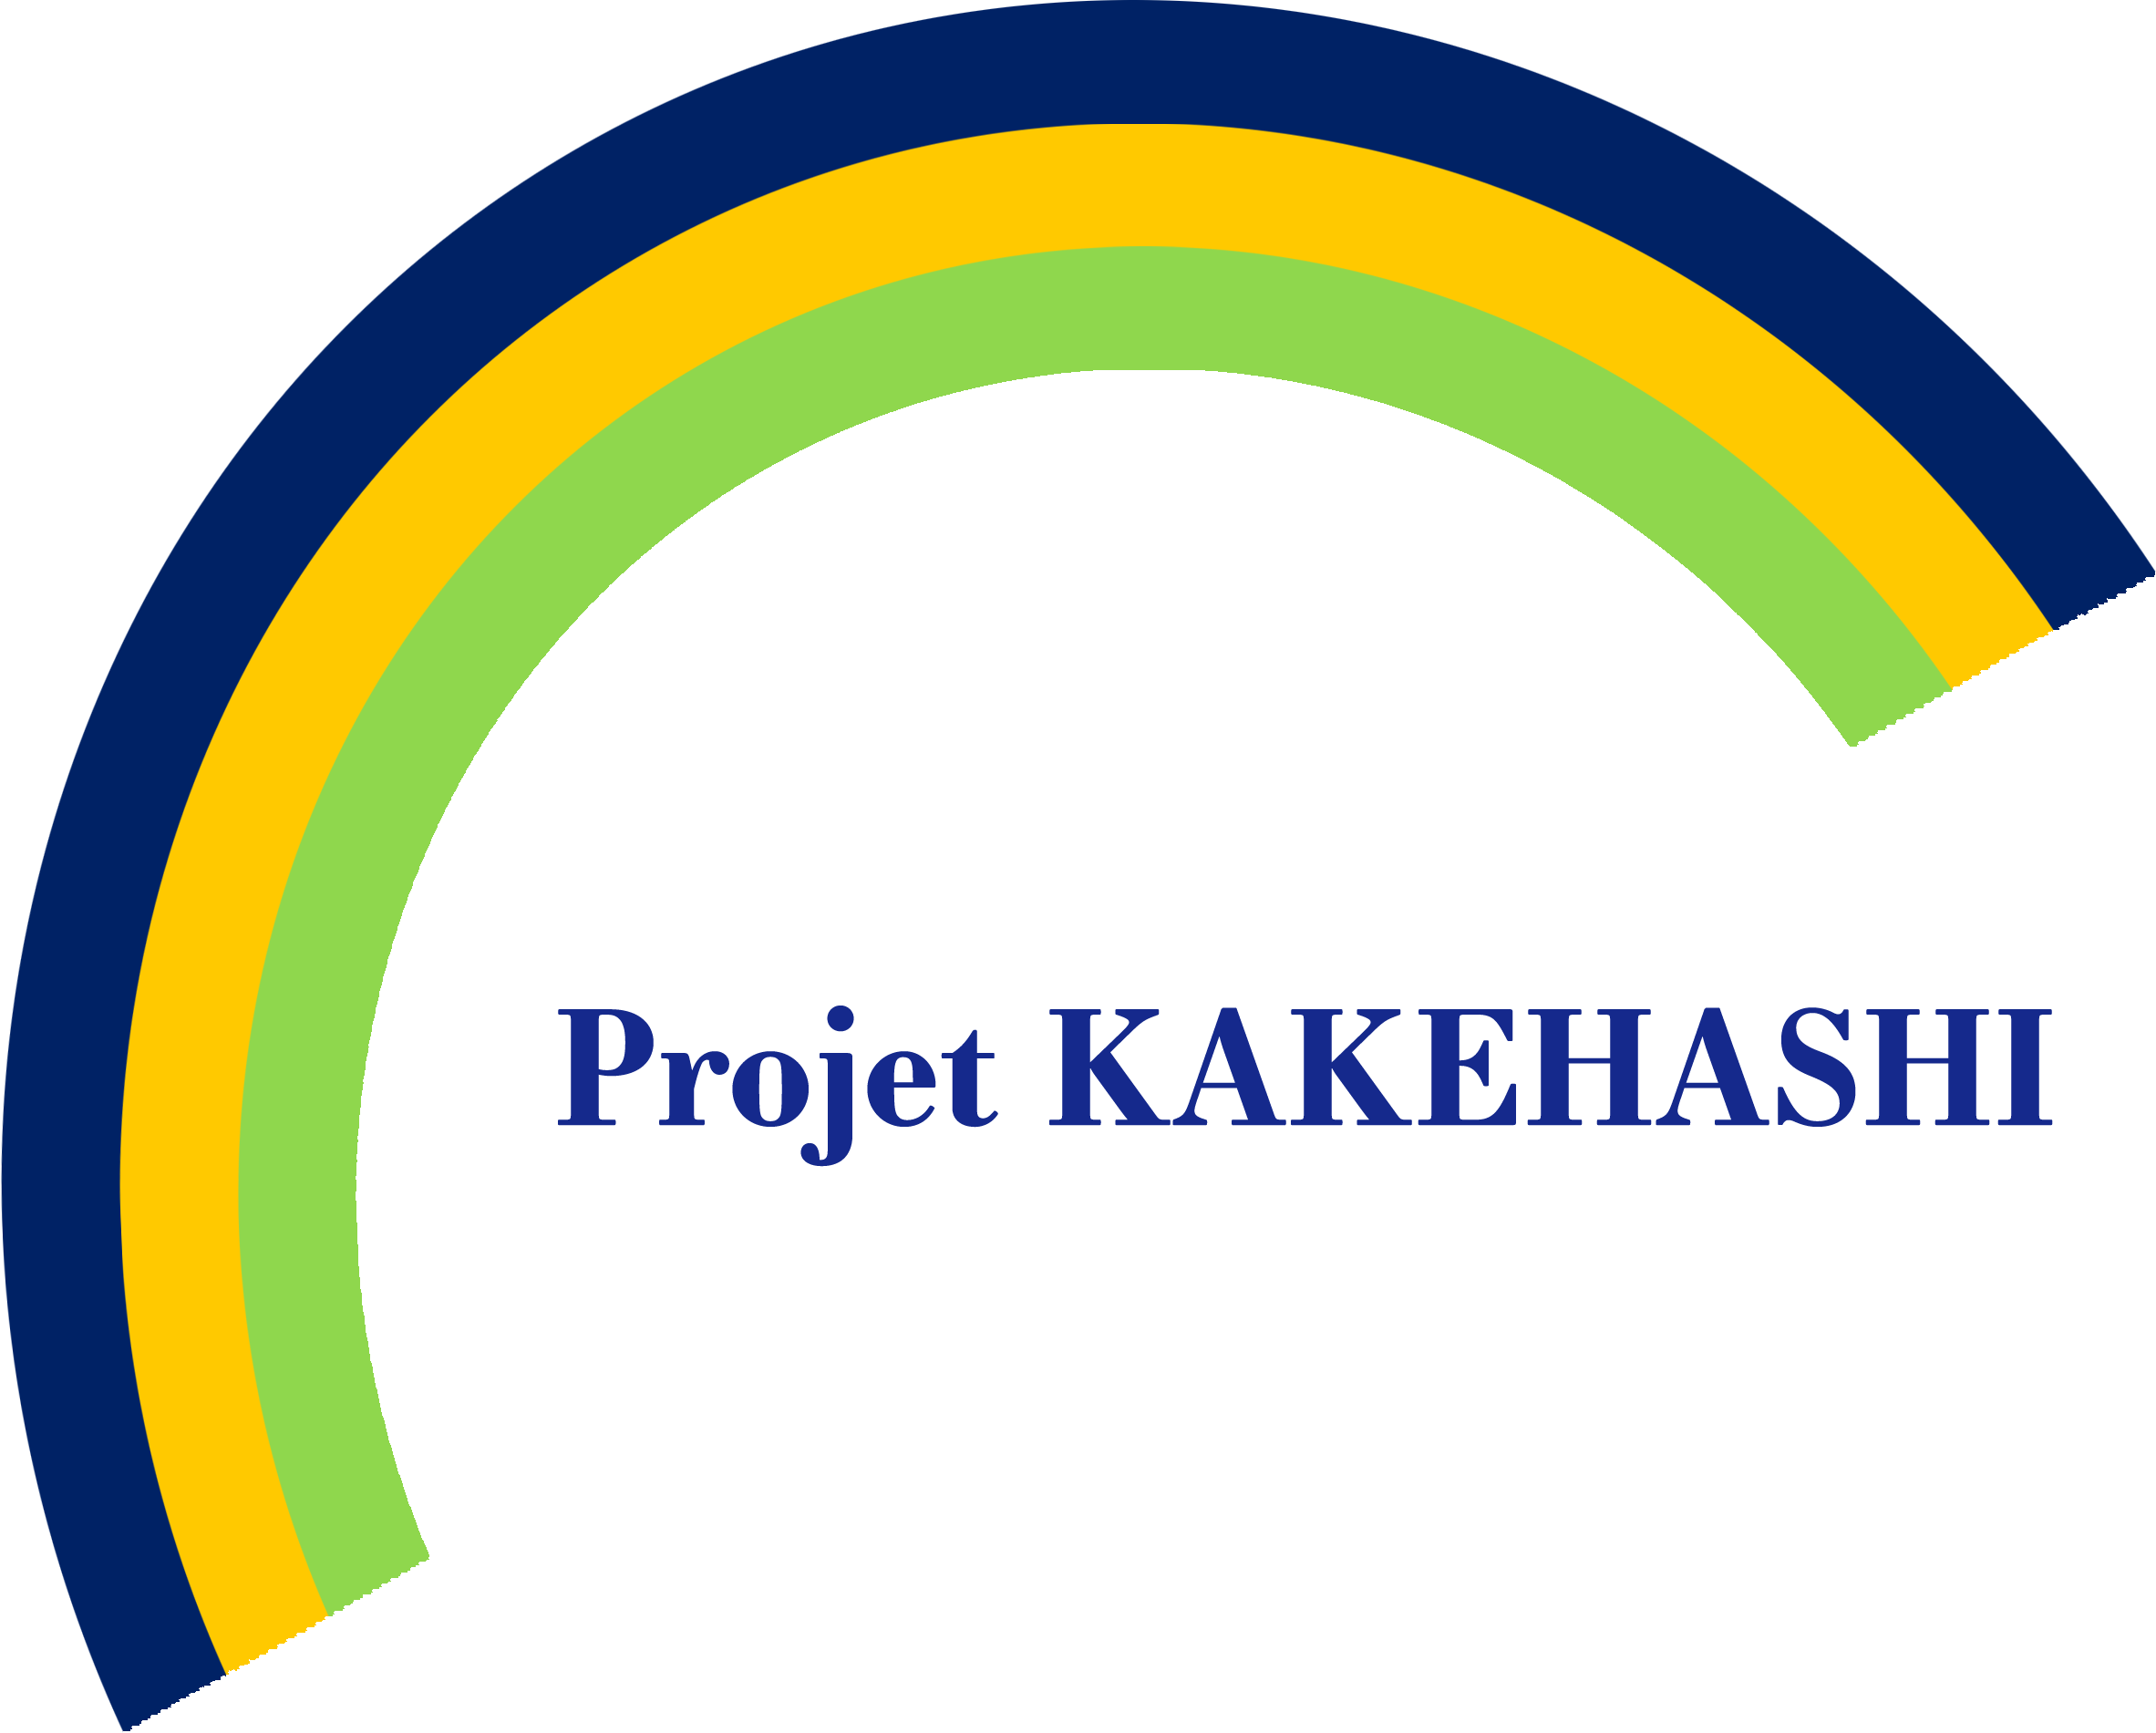 Projet Kakehashi logo 